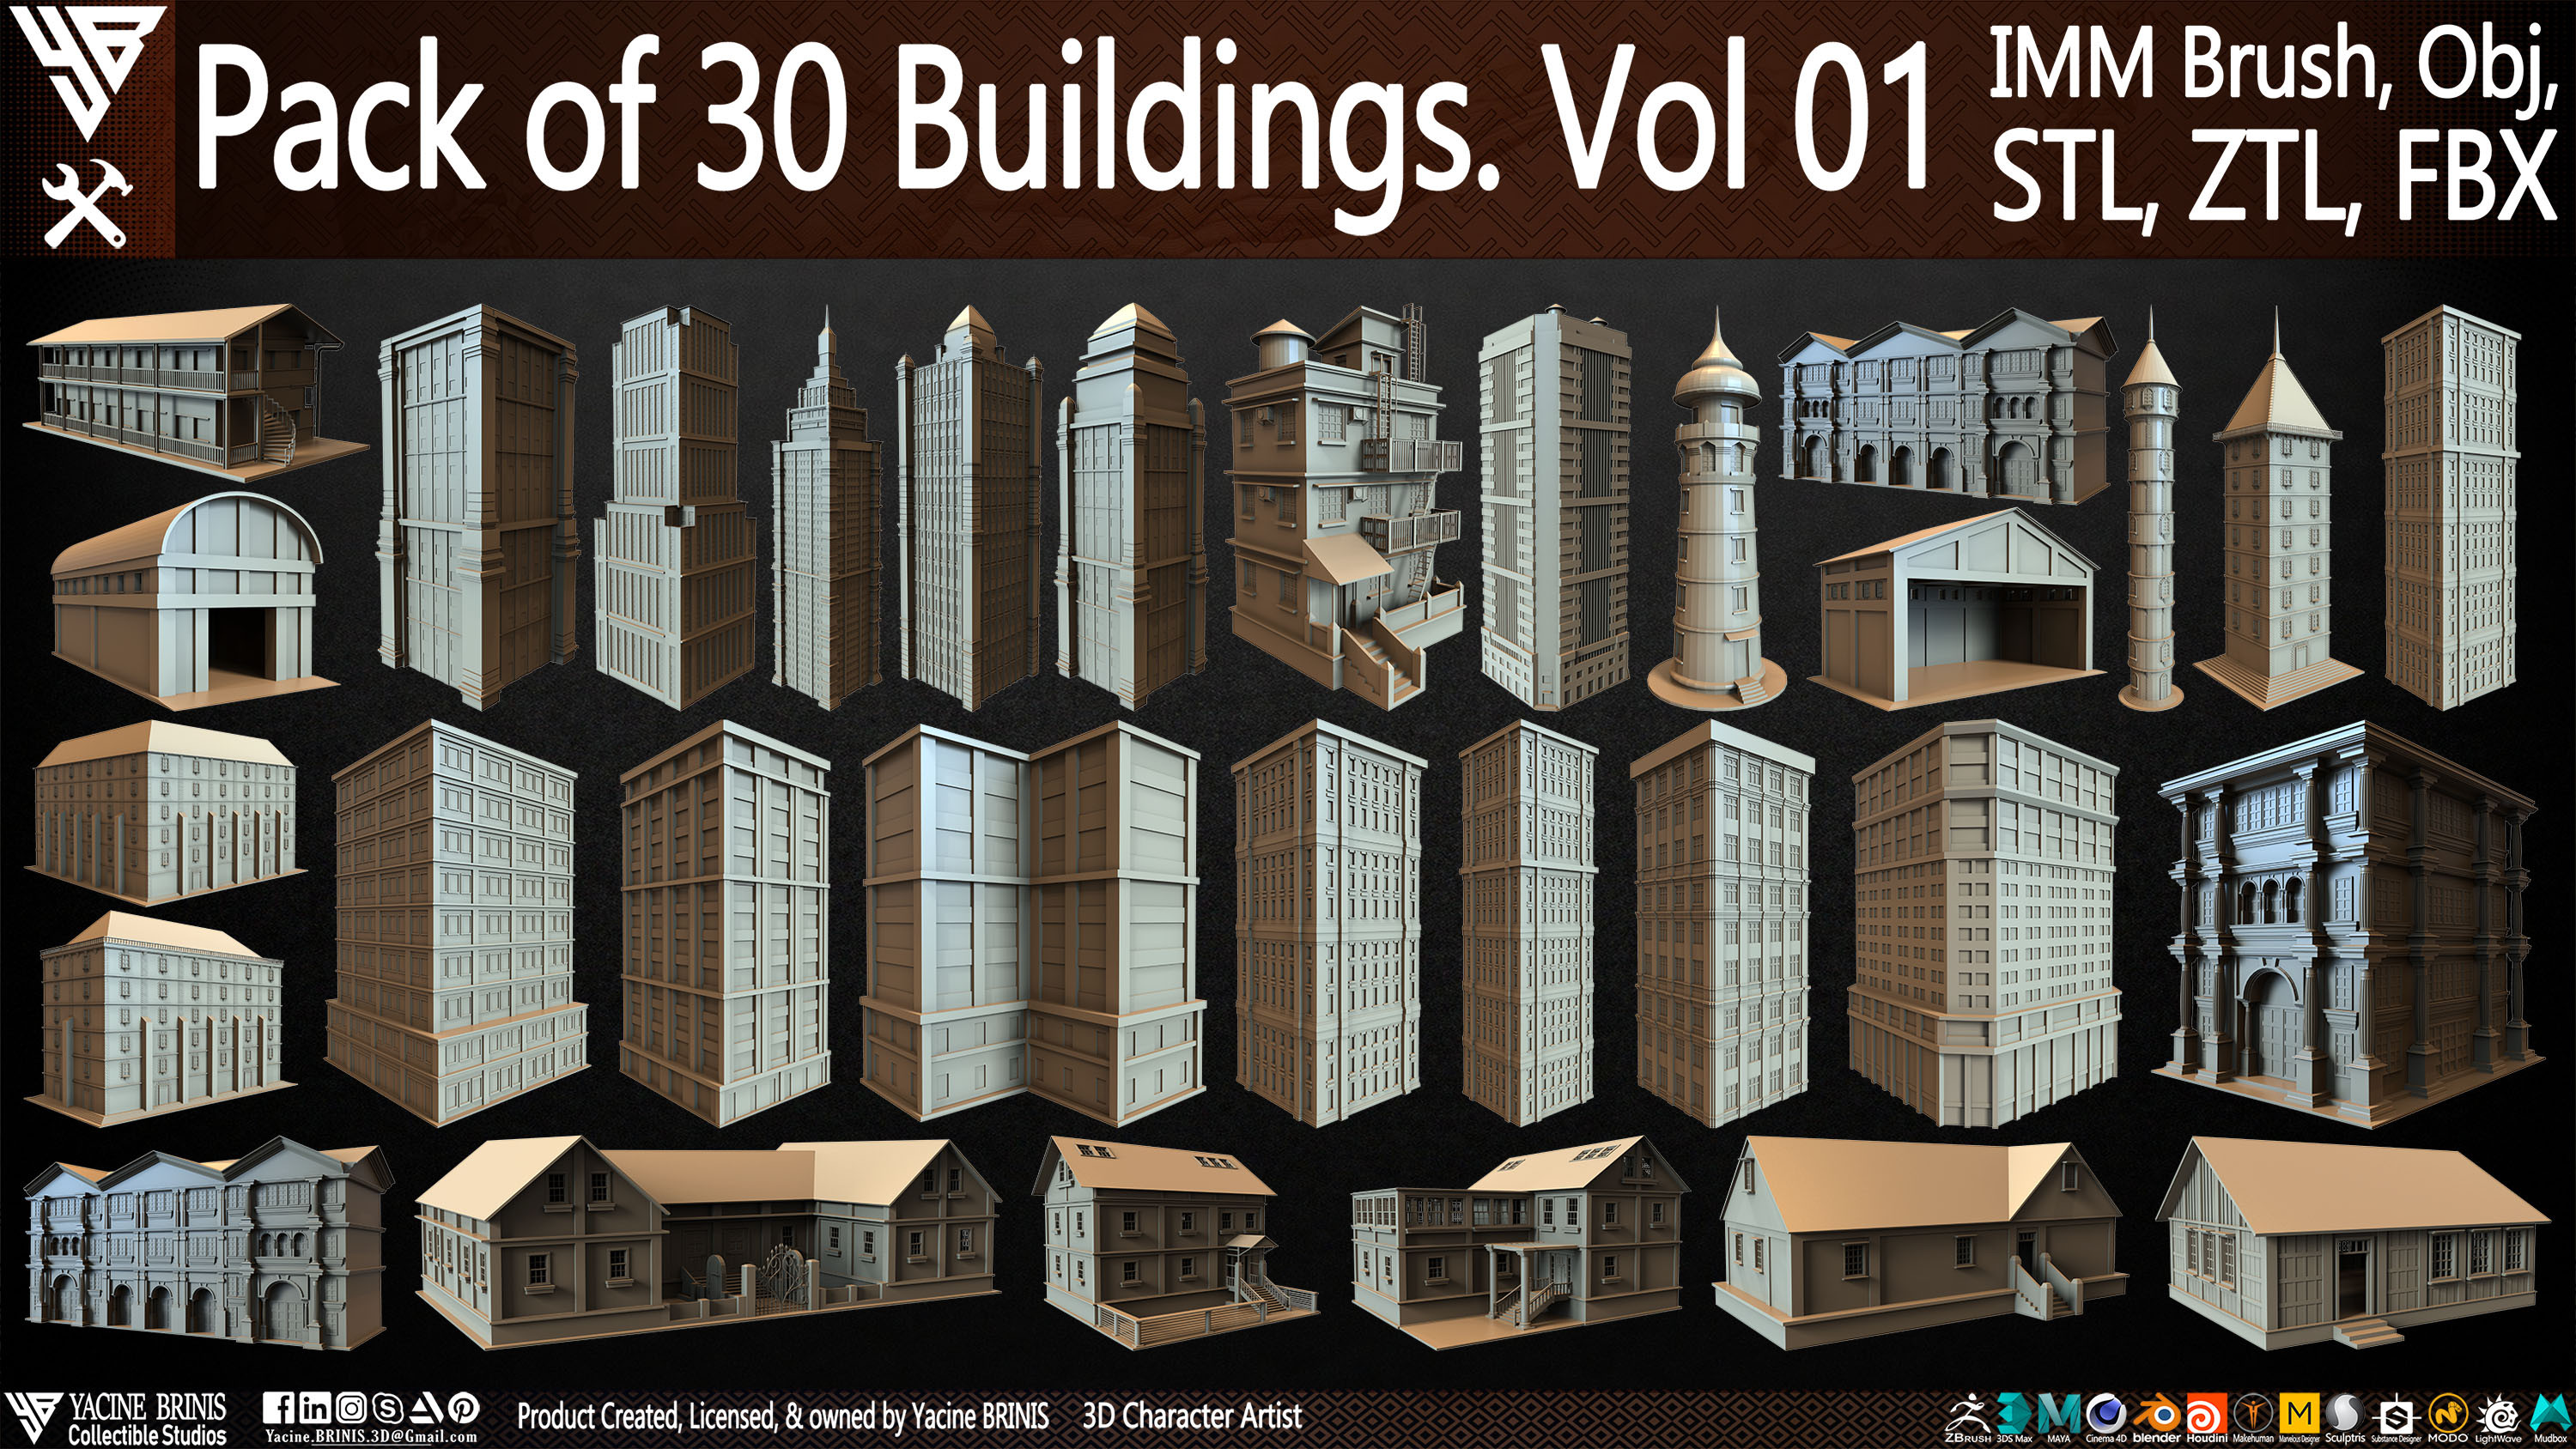 Pack of 30 Buildings Vol 01 Sculpted by Yacine BRINIS Set 003